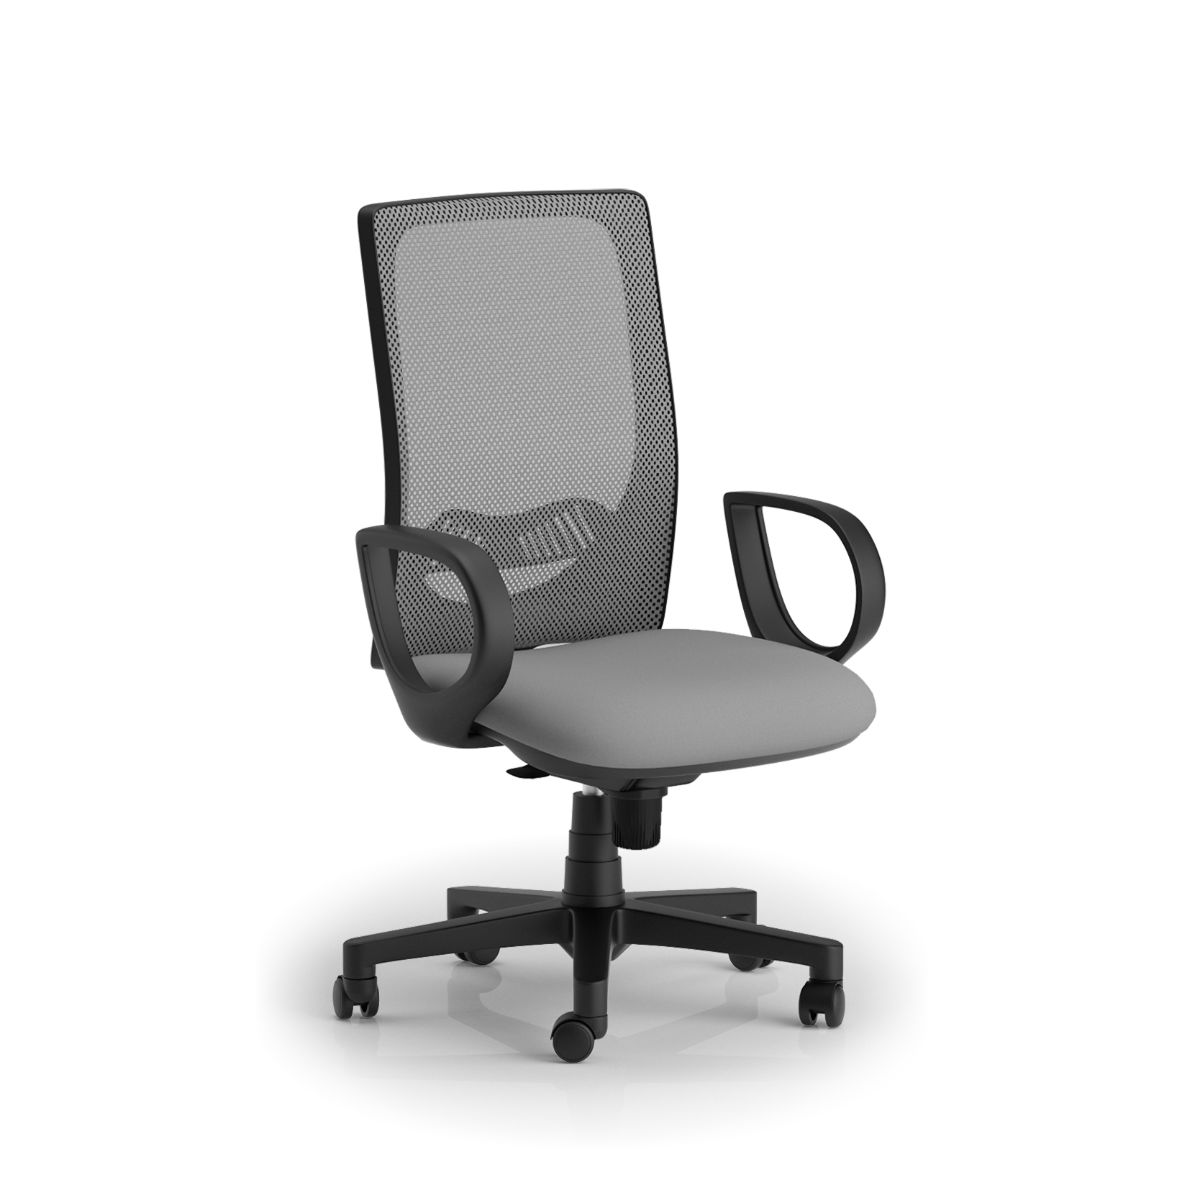 Q-TRE sedia ergonomica schienale alto